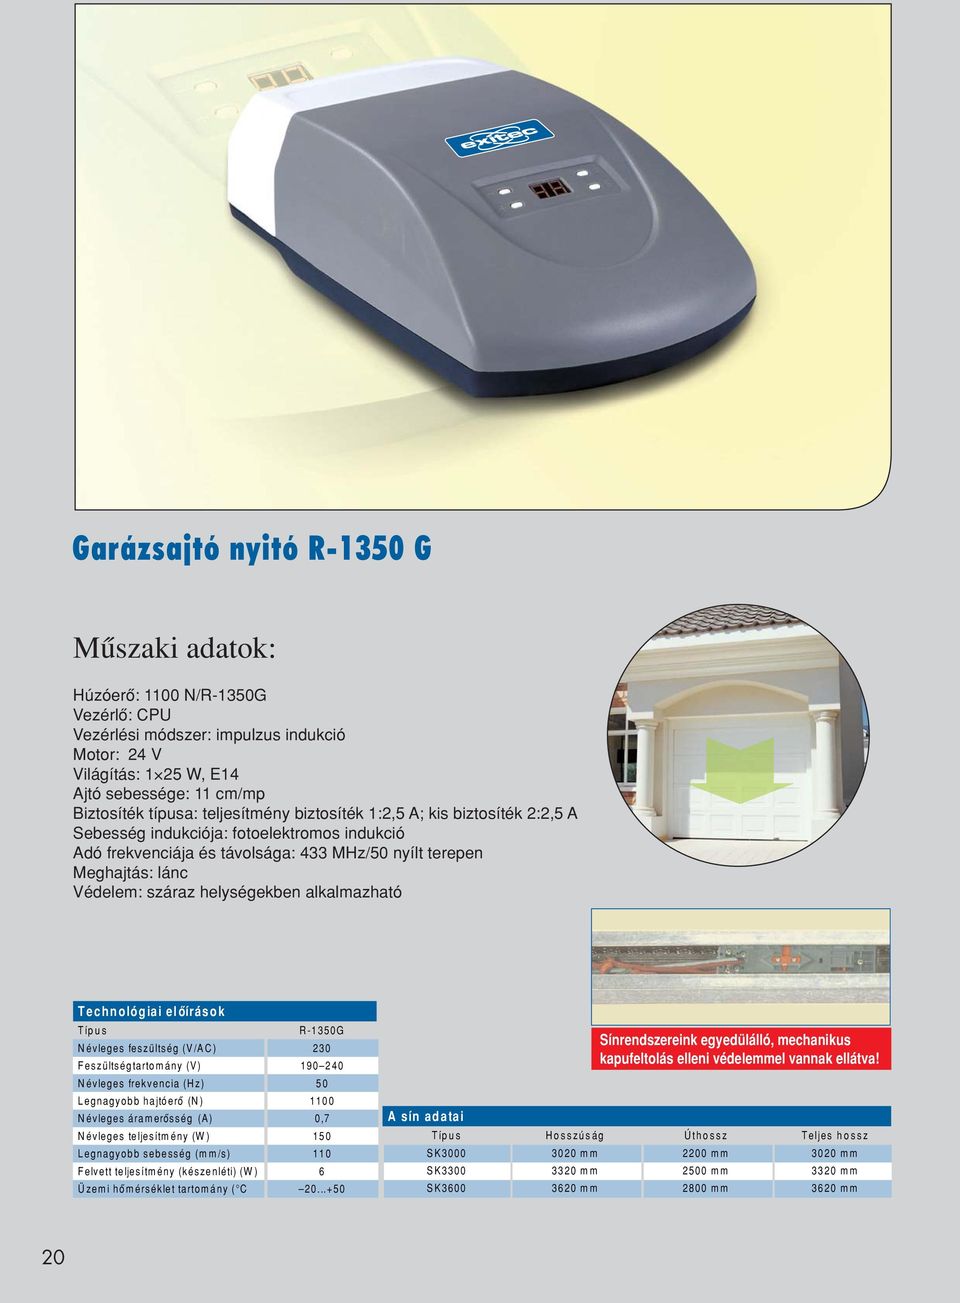 Garázsajtó nyitó R-1350 G - PDF Free Download